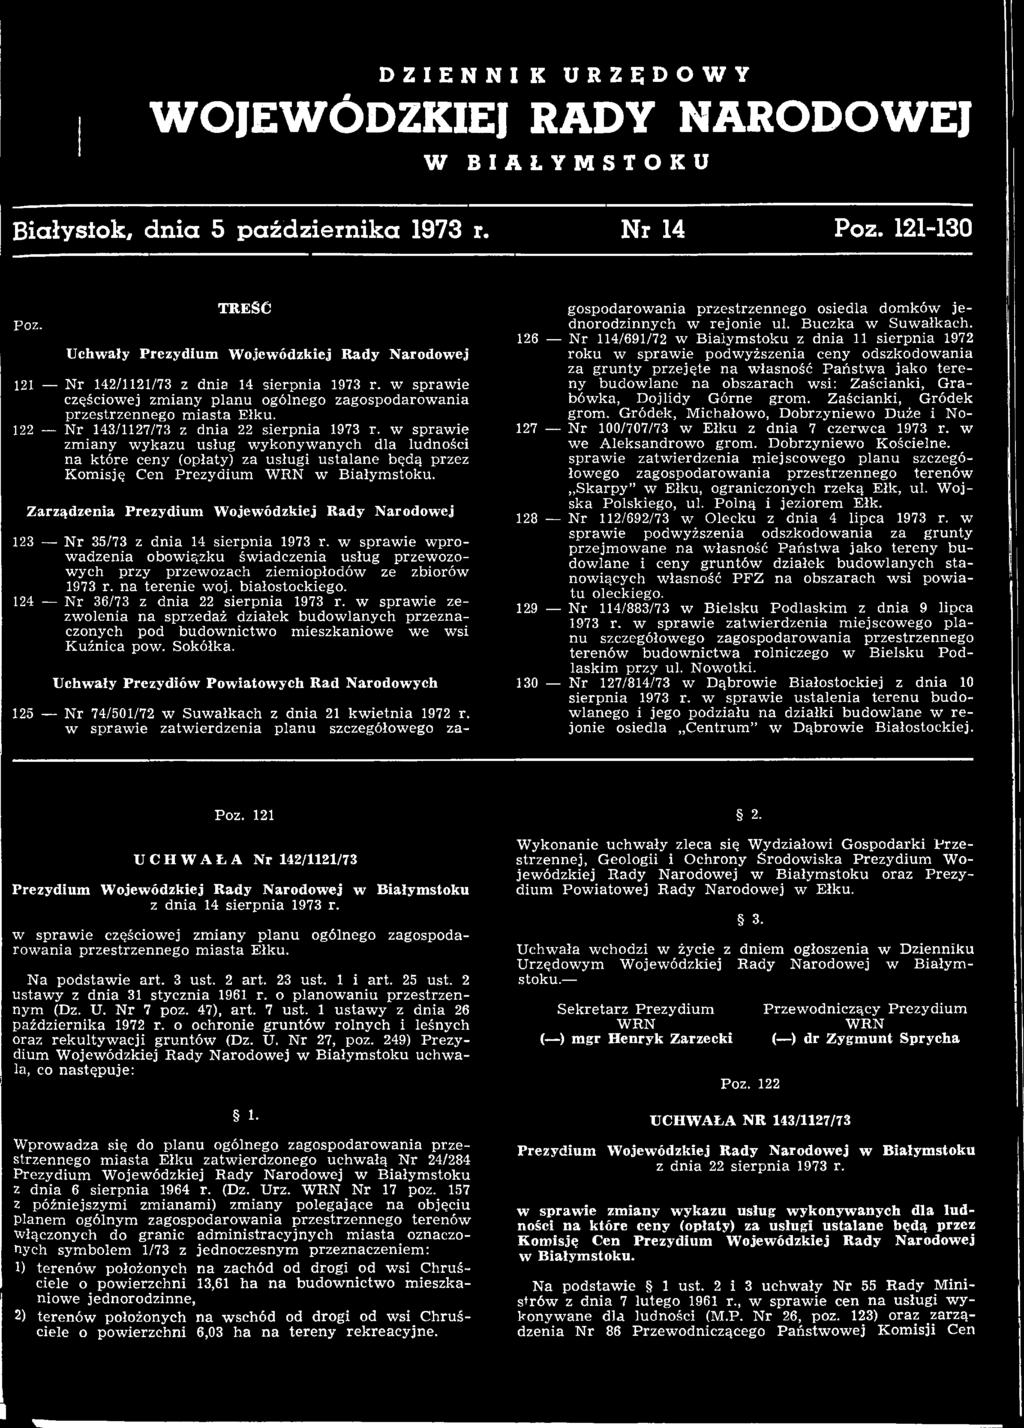 w sprawie wprowadzenia obowiązku świadczenia usług przewozowych przy przewozach ziemiopłodów ze zbiorów 1973 r. na terenie woj. białostockiego. 124 Nr 36/73 z dnia 22 sierpnia 1973 r.